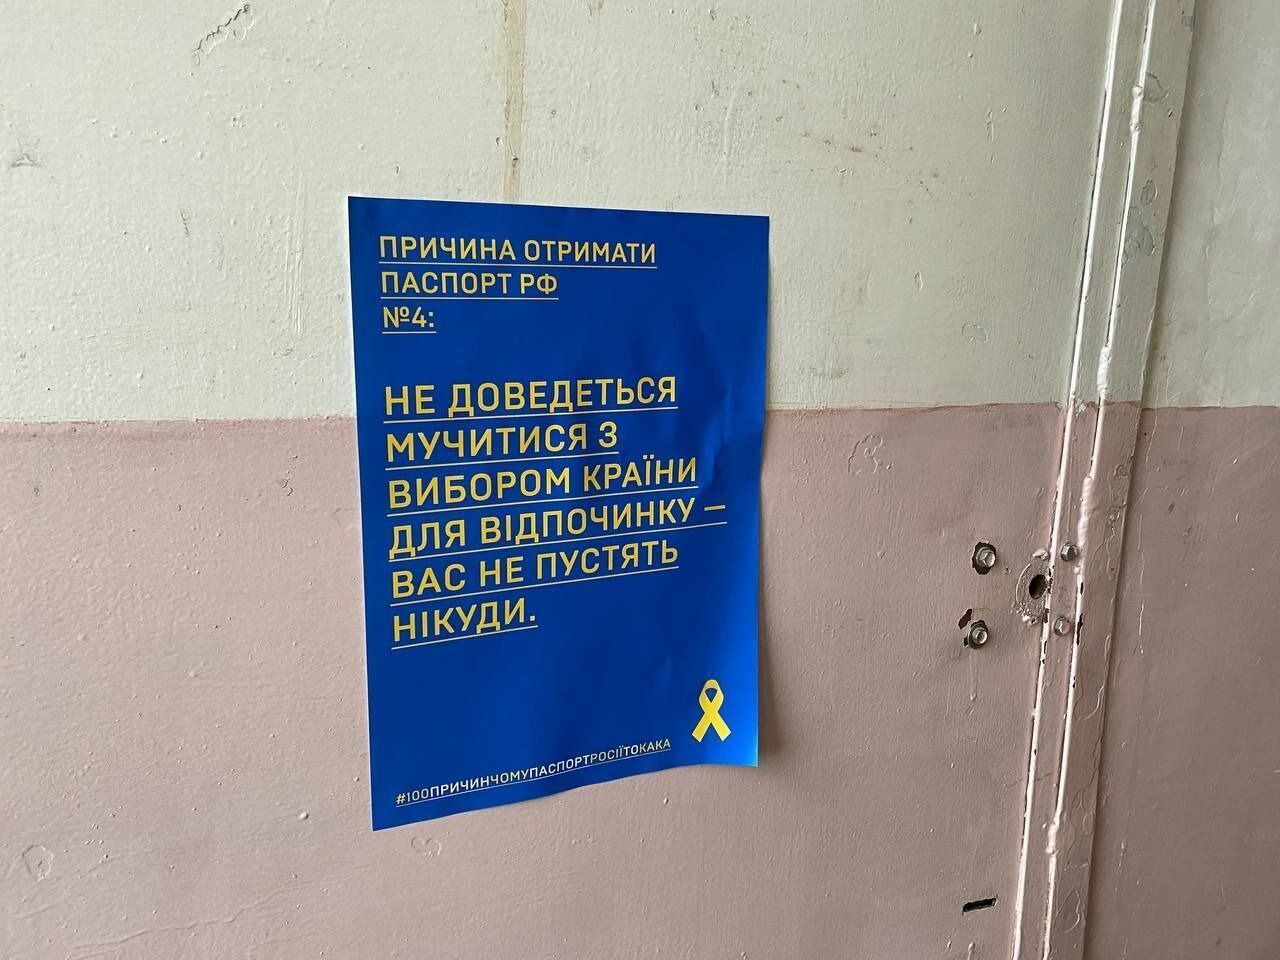 "На нем можно резать колбаску": в оккупированном Мелитополе высмеяли "достоинства" российского паспорта. Фото